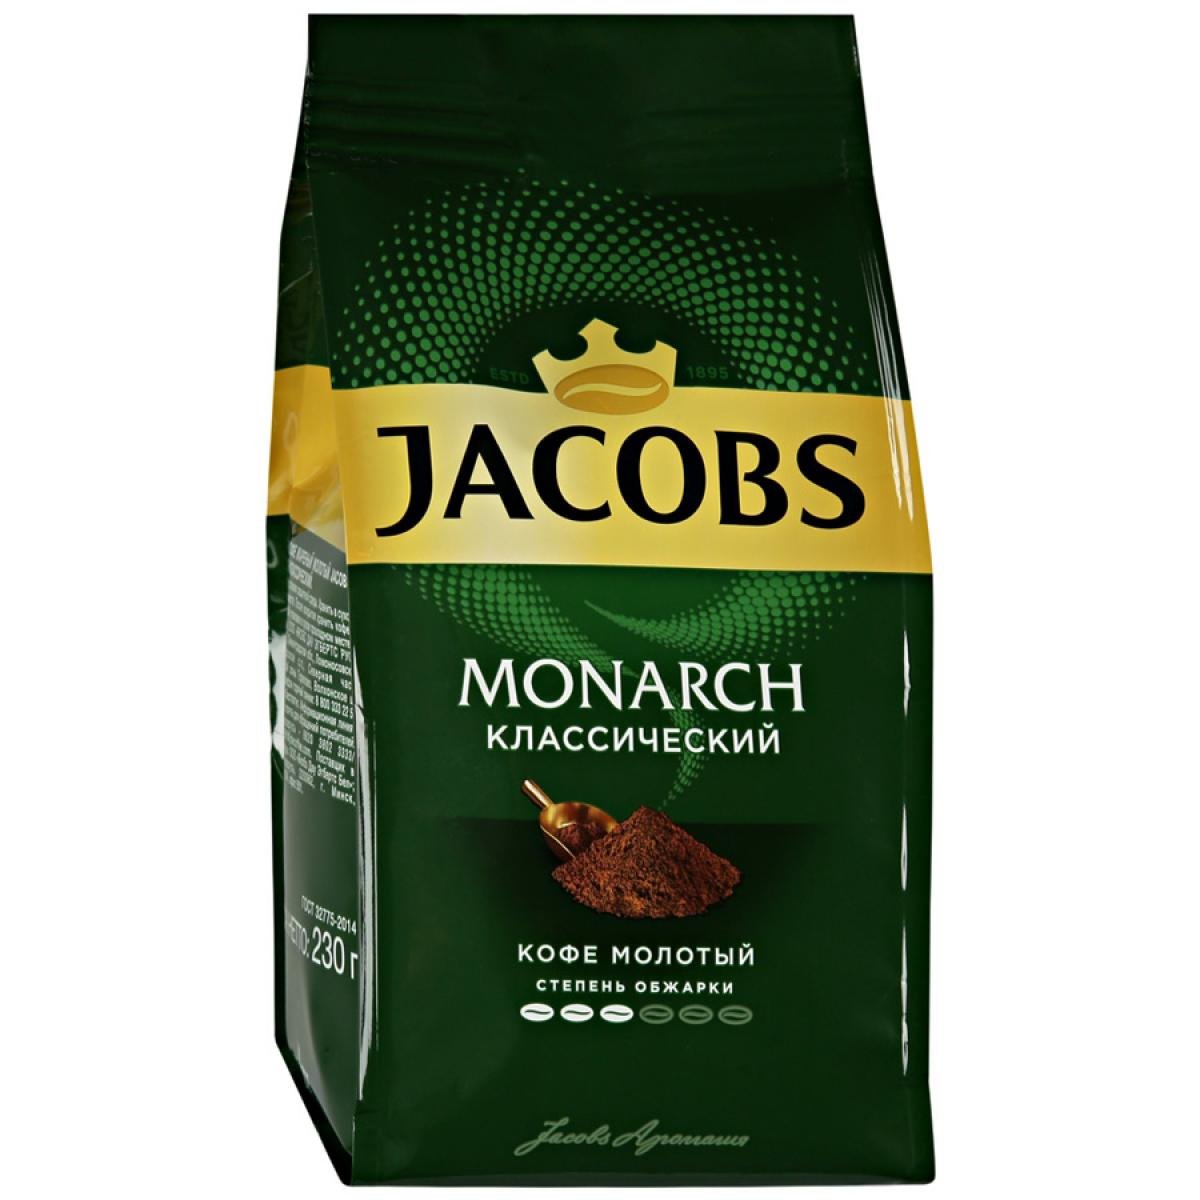 Как назывался кофе монарх. Кофе молотый Якобс Монарх классический 230г. Кофе молотый Jacobs Monarch, 230 г. Кофе молотый Jacobs Monarch классический. Якобс Монарх молотый 230 грамм.